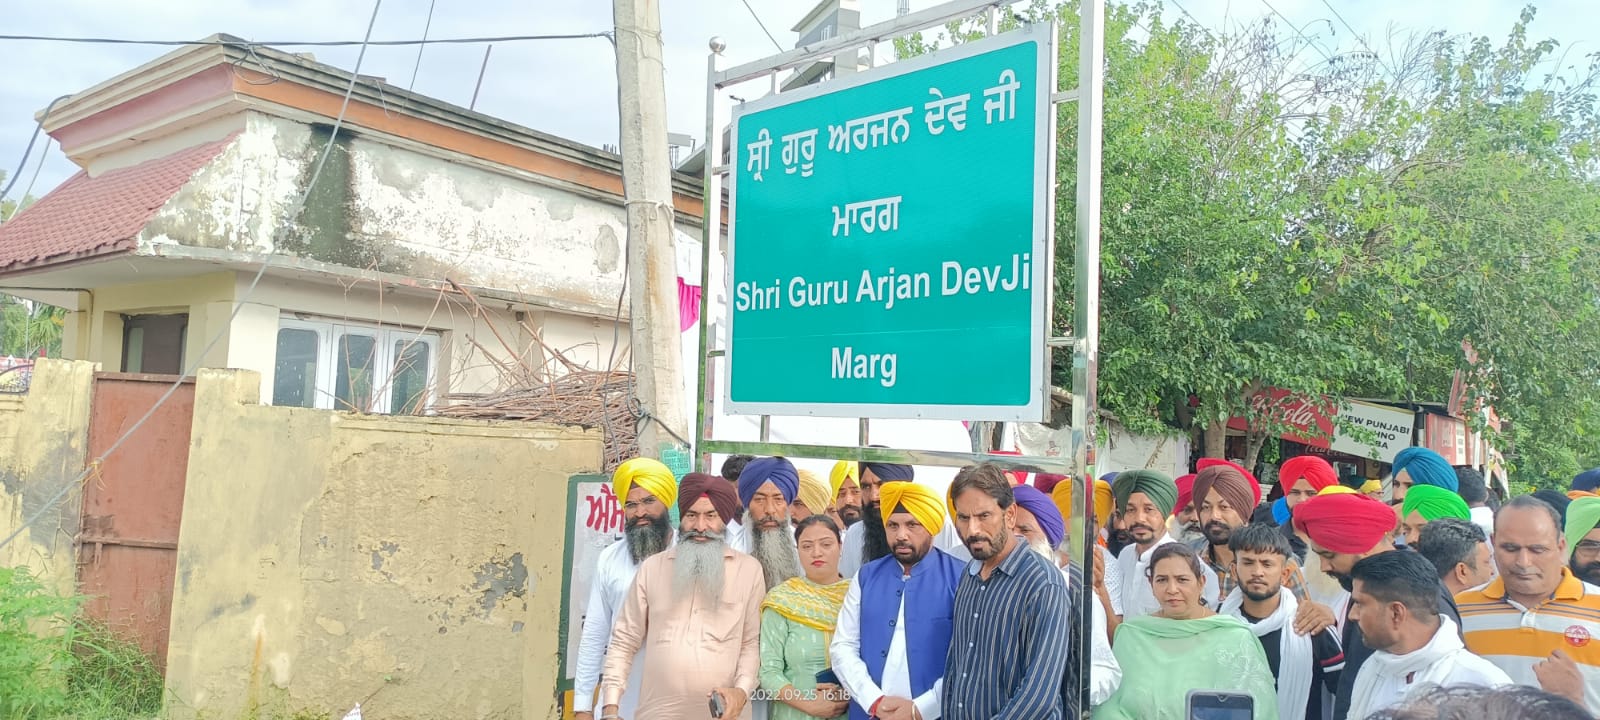 Changed name of Tarn Taran Road, Name of Sri Guru Arjan Dev Ji Hoya Marg